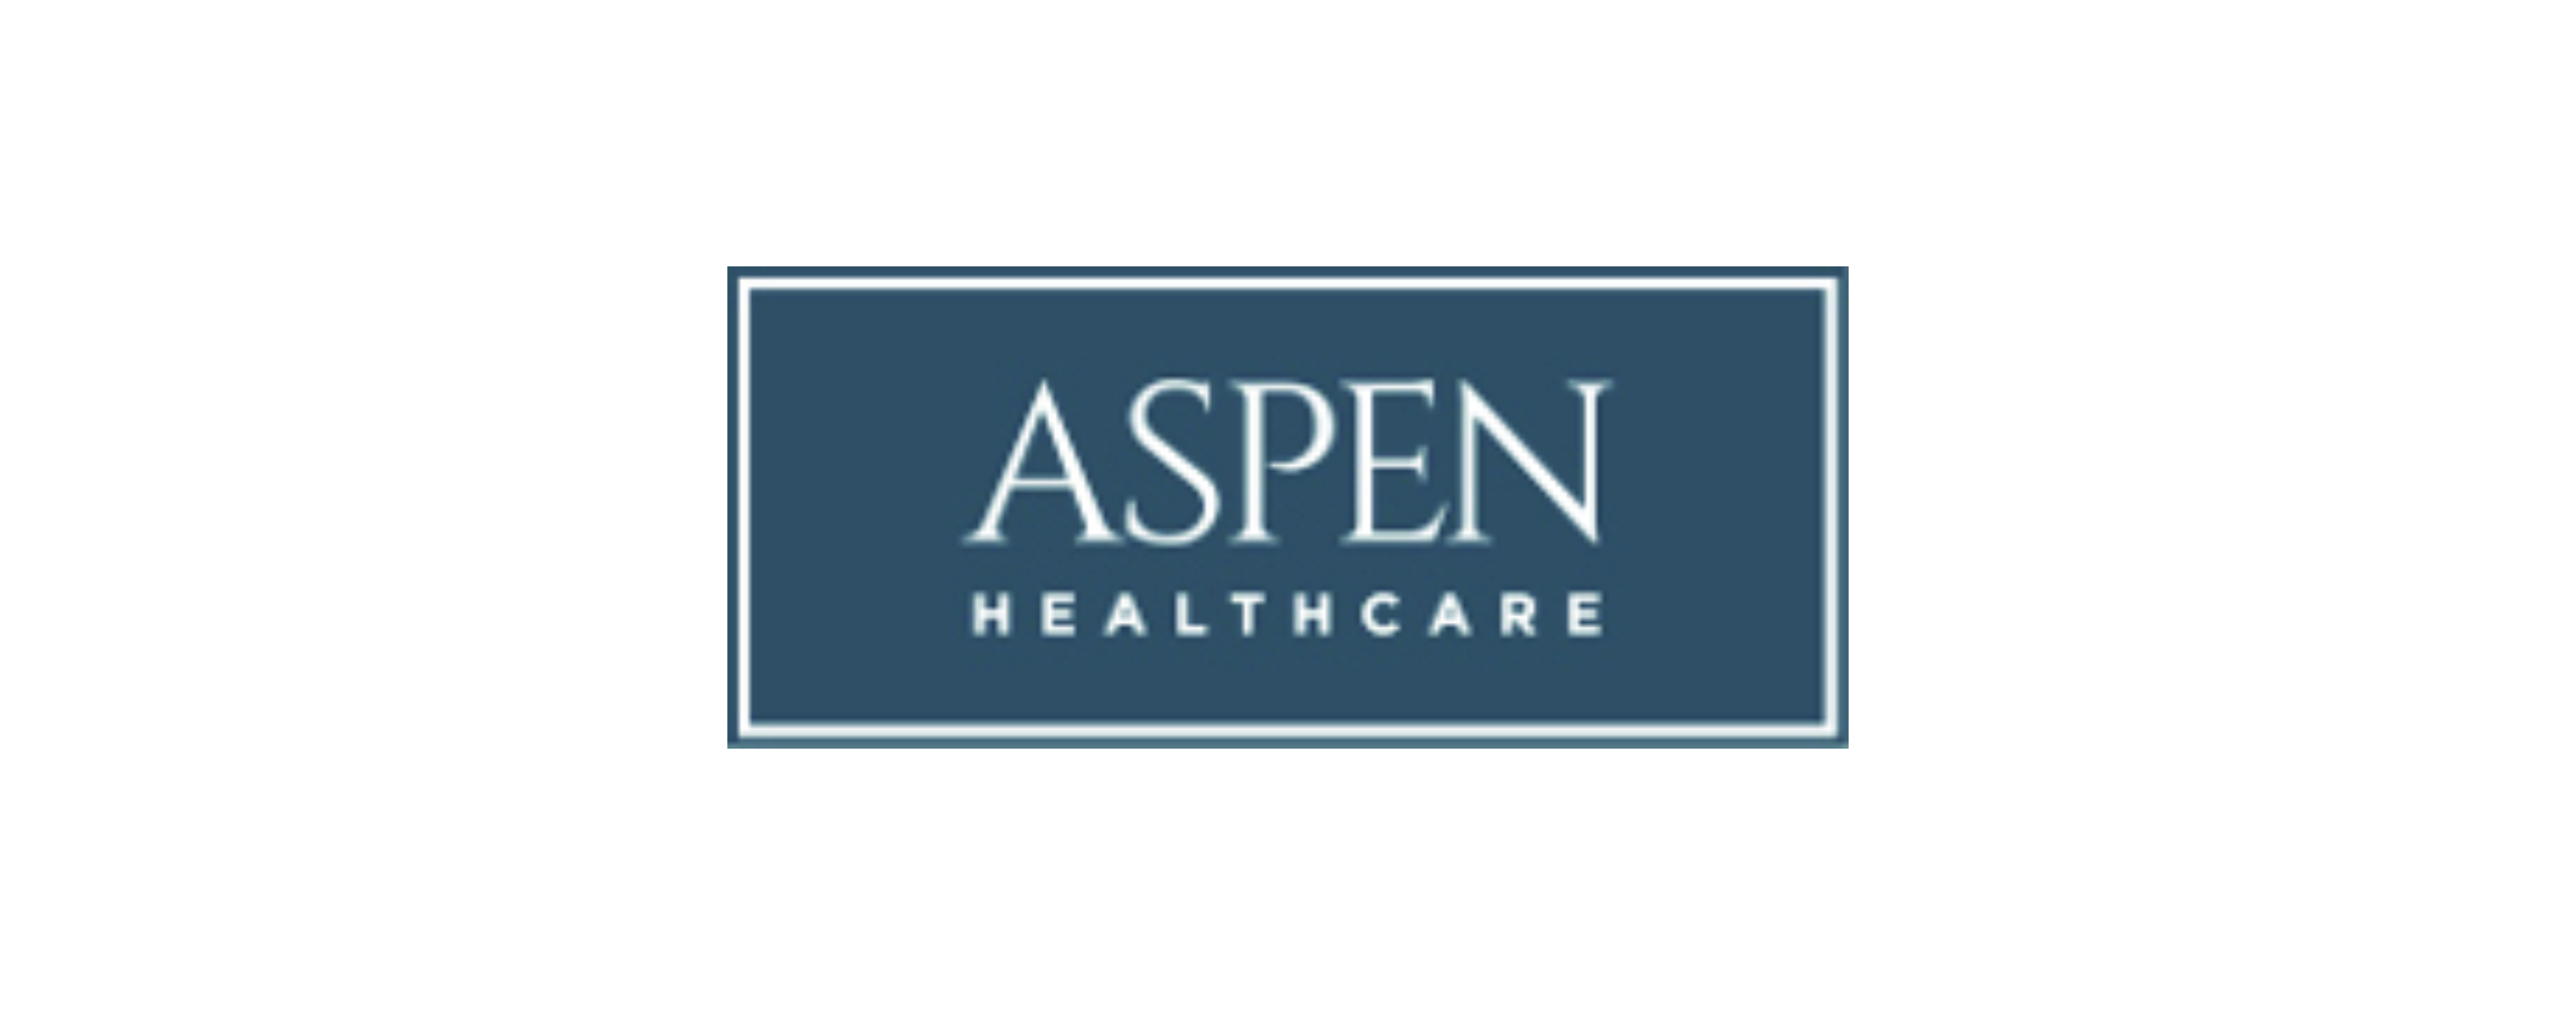 Aspen Healthcare logo